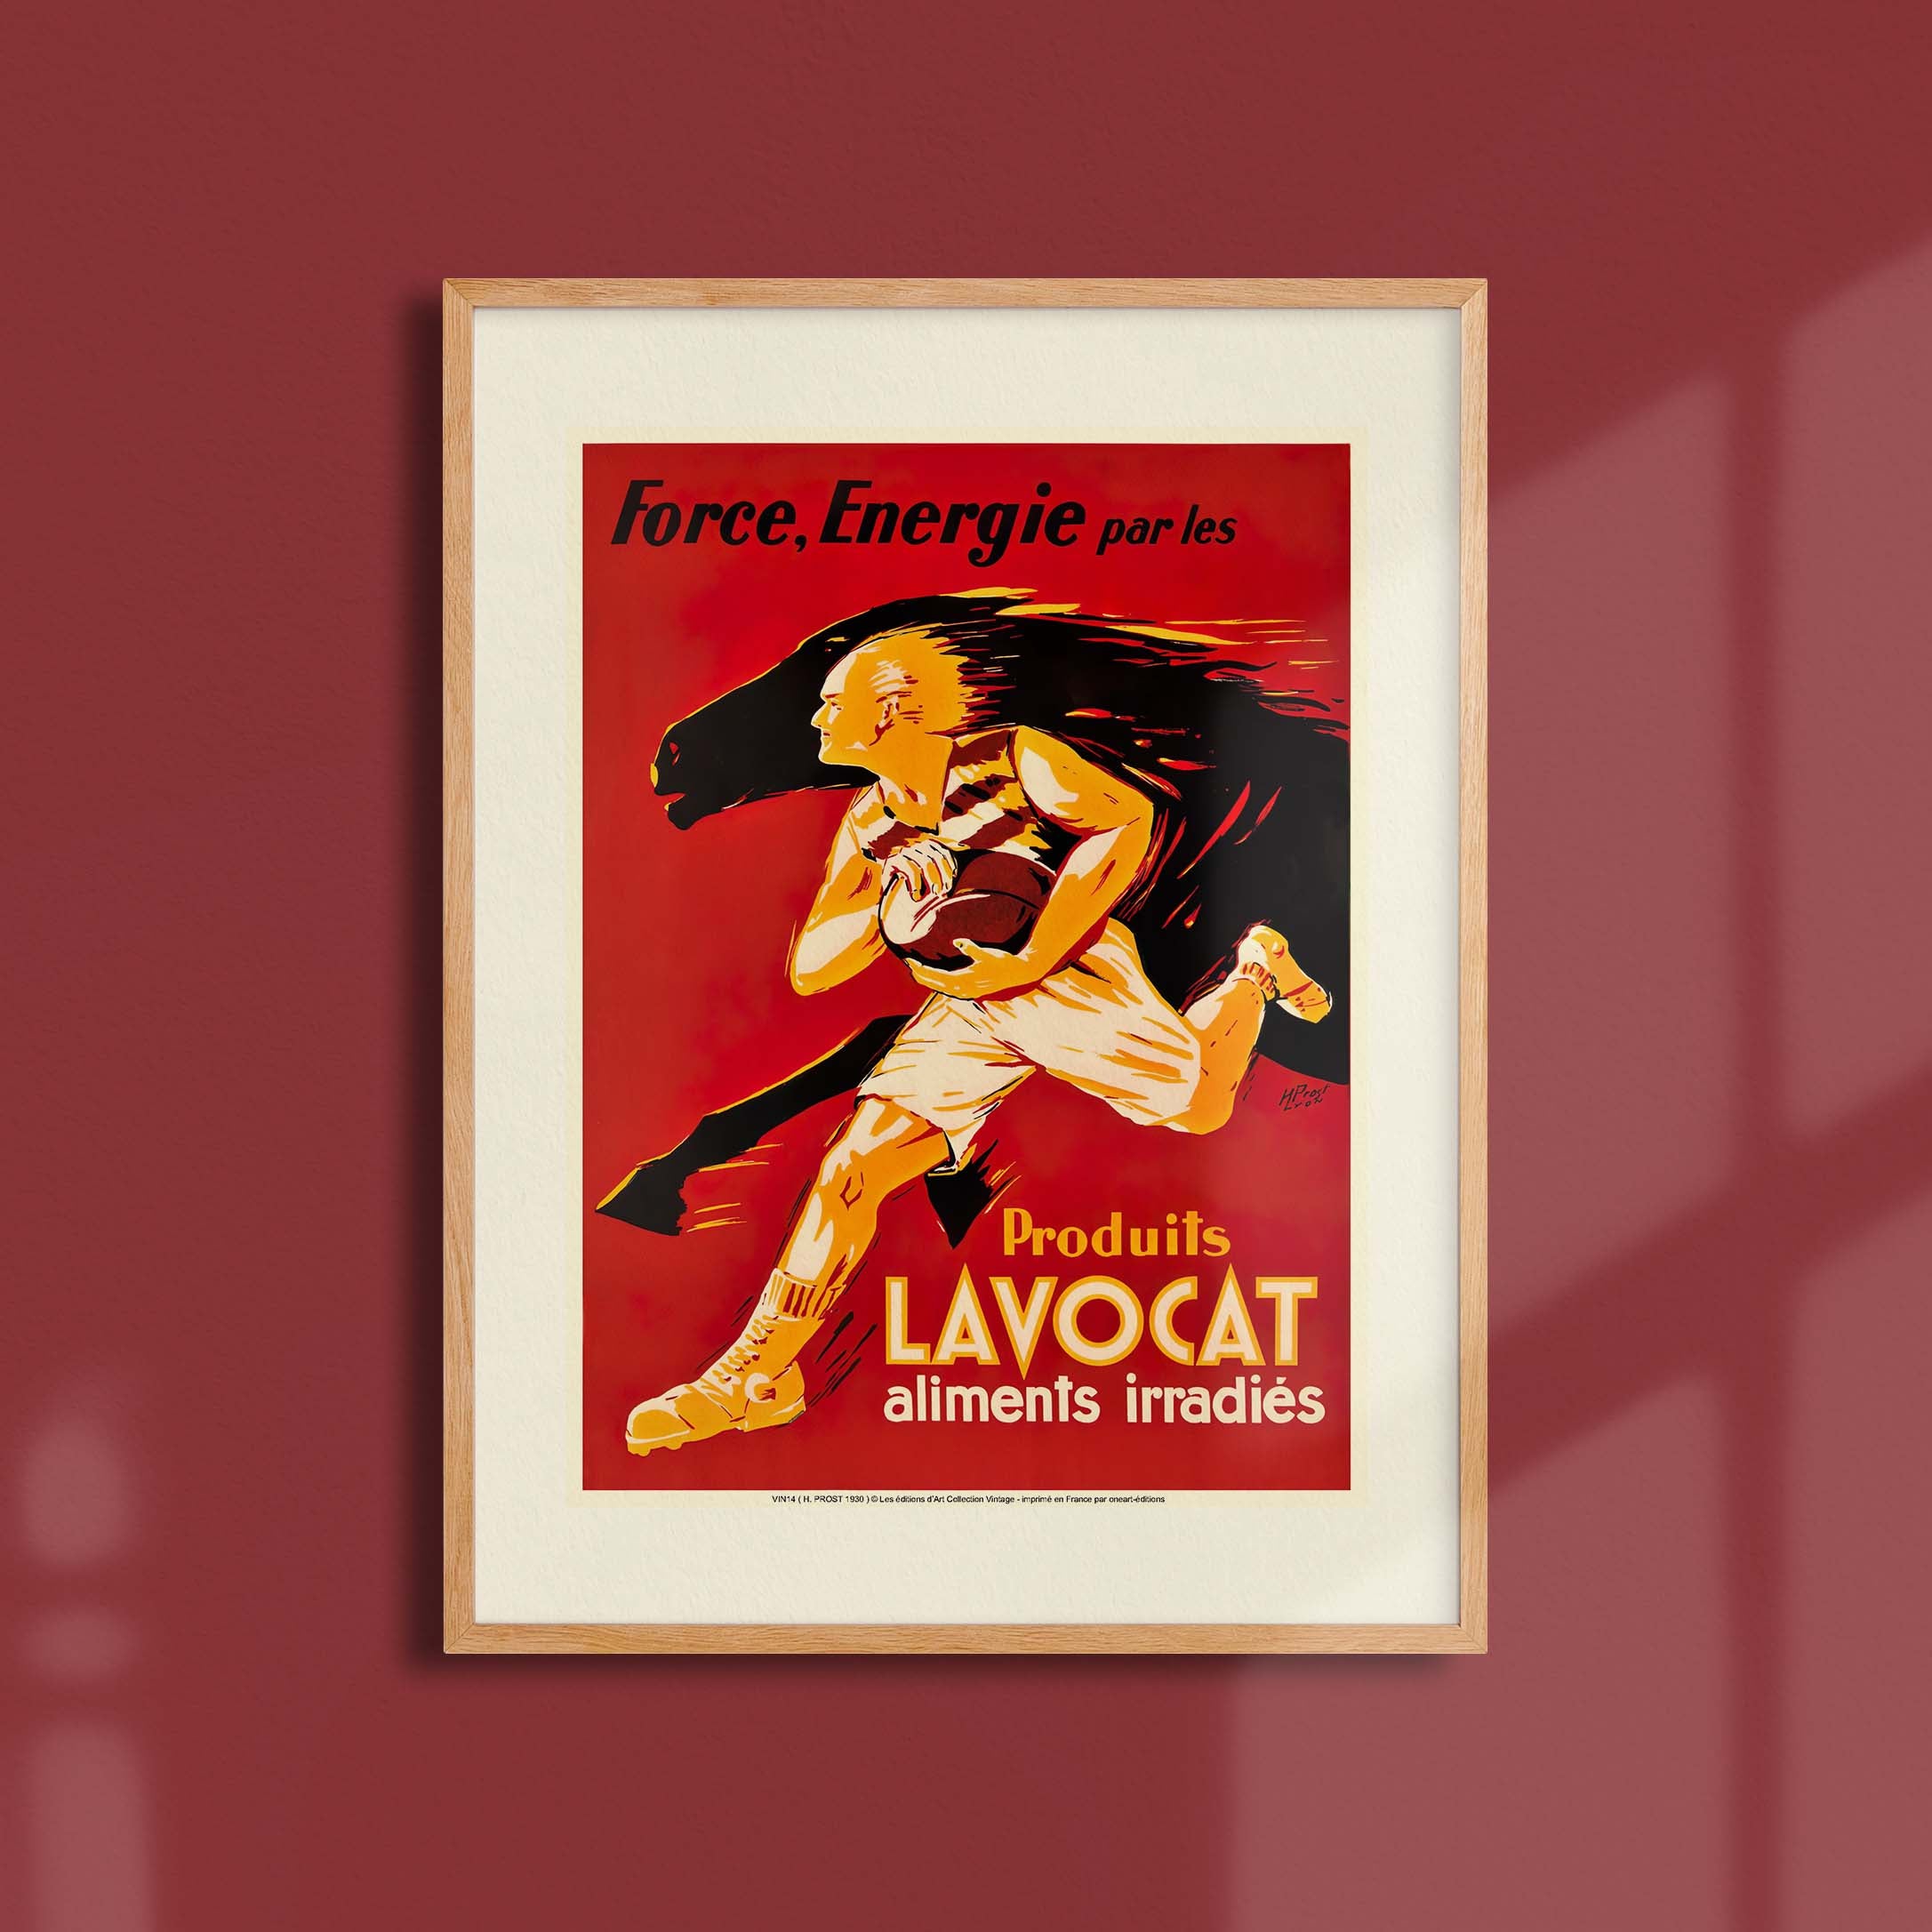 Affiche publicité vintage - Lavocat-oneart.fr